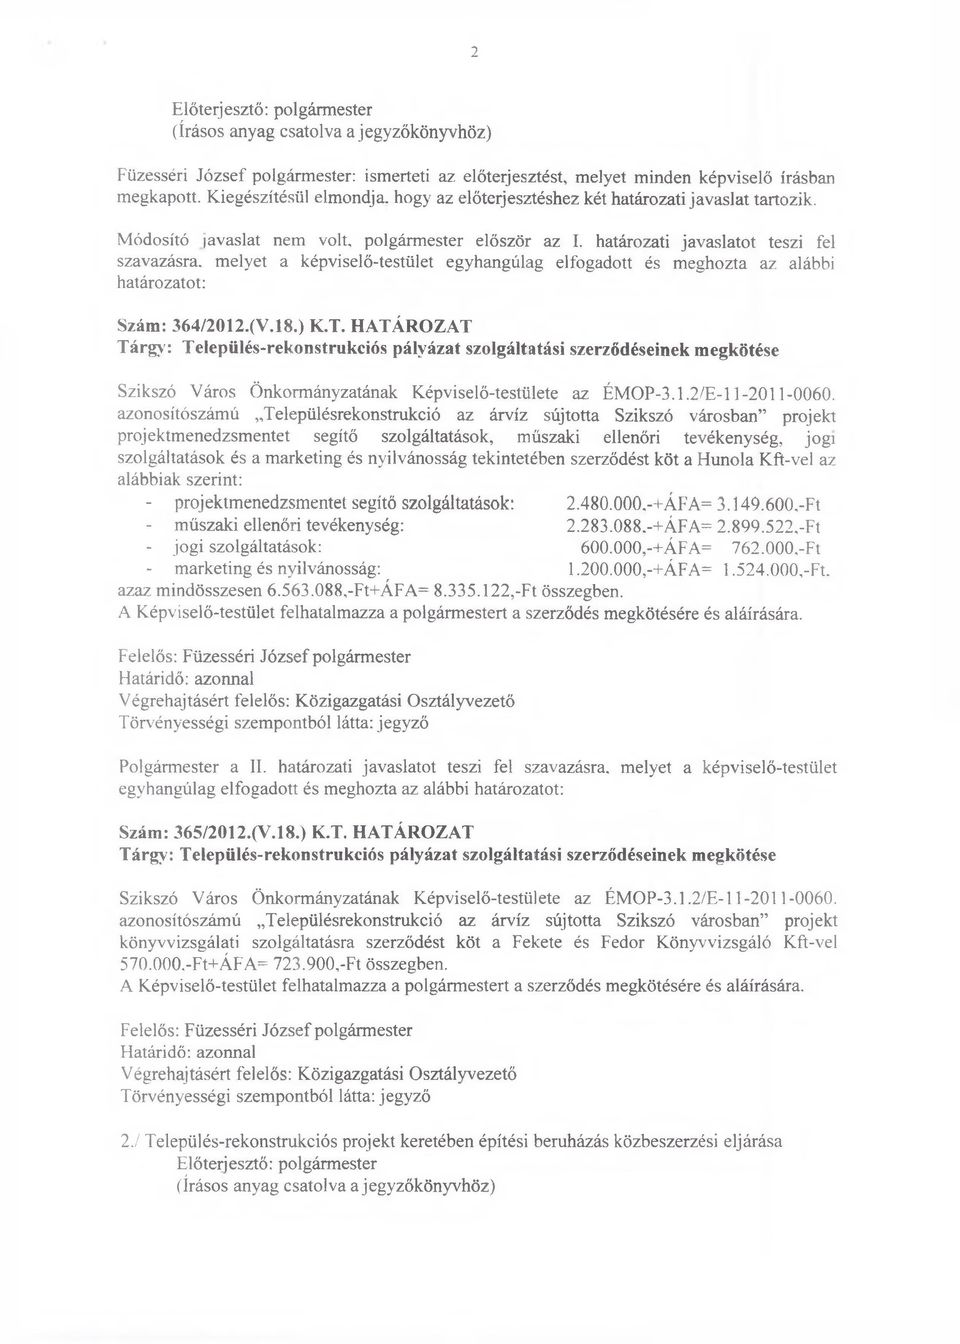 (V. 18.) K.T. HATÁROZAT Tárgy: Település-rekonstrukciós pályázat szolgáltatási szerződéseinek megkötése Szikszó Város Önkormányzatának Képviselő-testülete az ÉMOP-3.1.2/E-11-2011-0060.